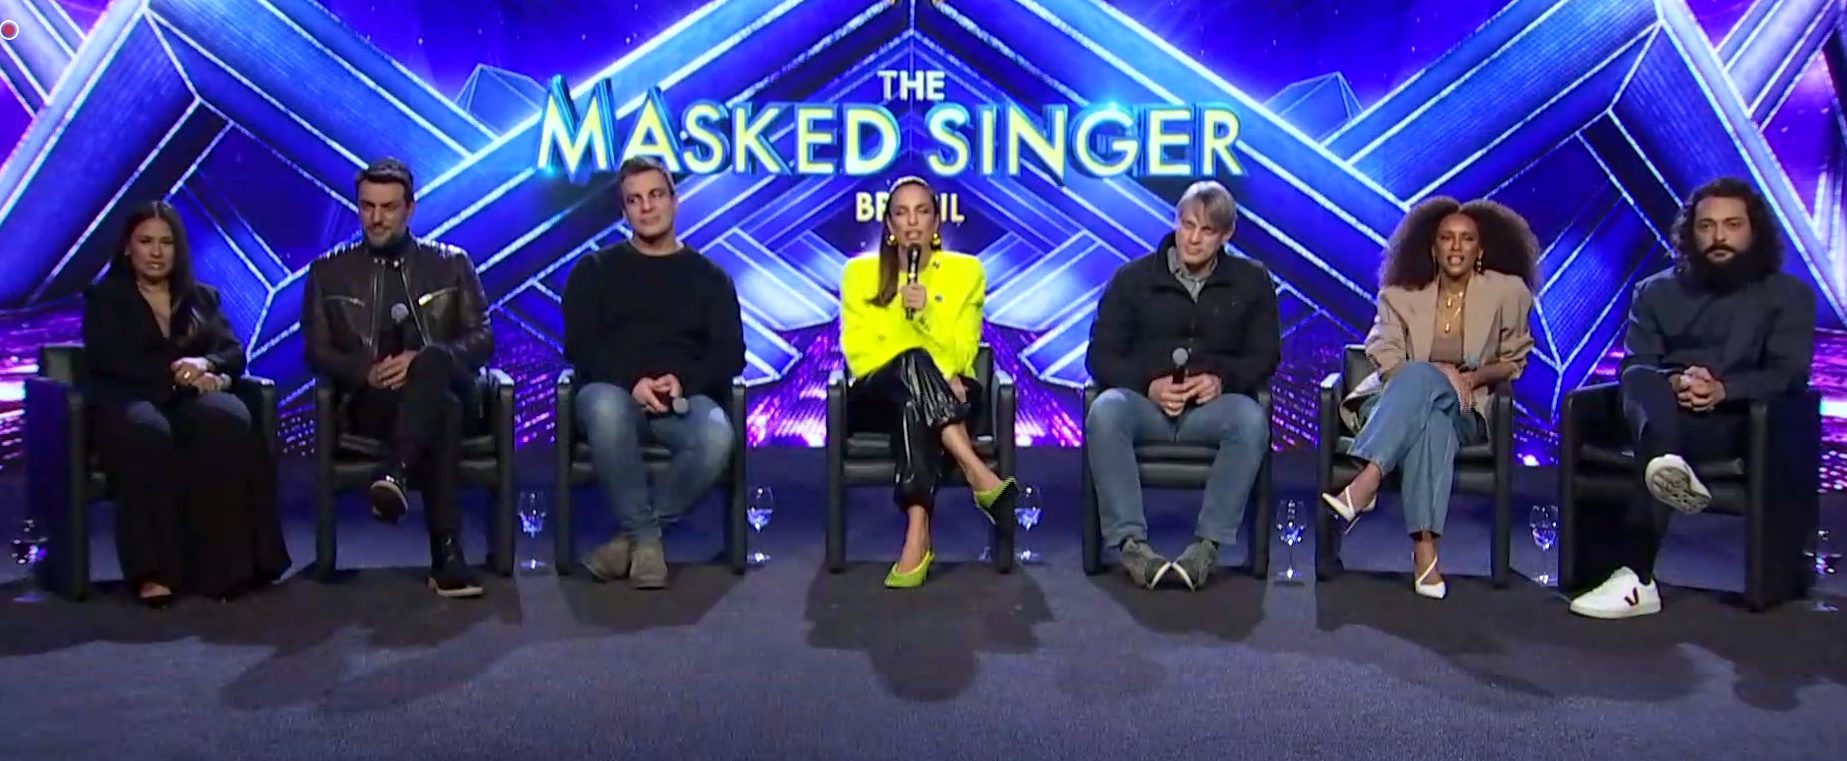 Diretores falam do diferencial do The Masked Singer Brasil em comparação com versões estrangeiras